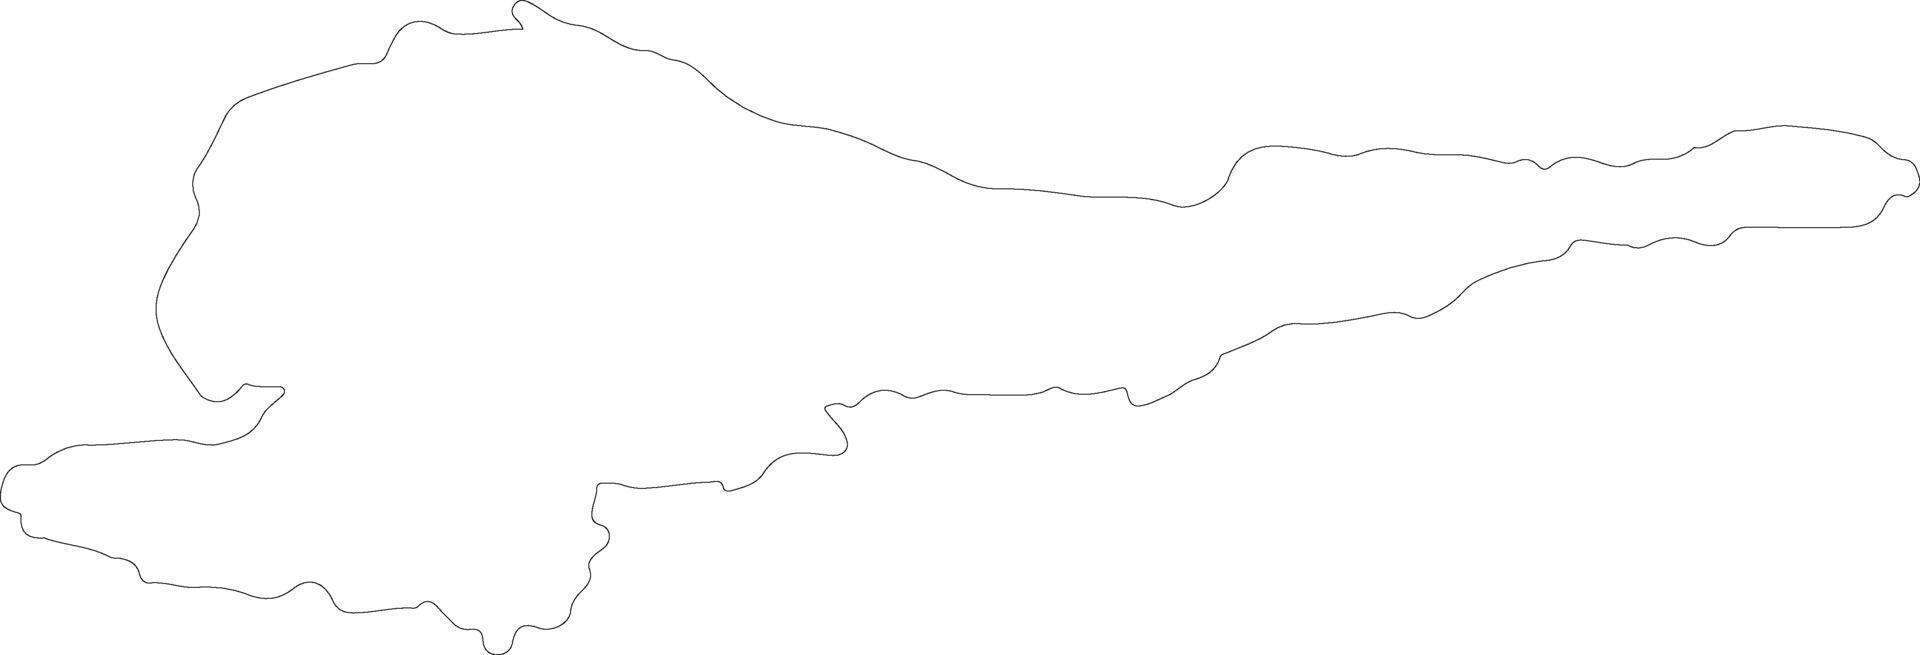 Chuy Kirghizistan contour carte vecteur